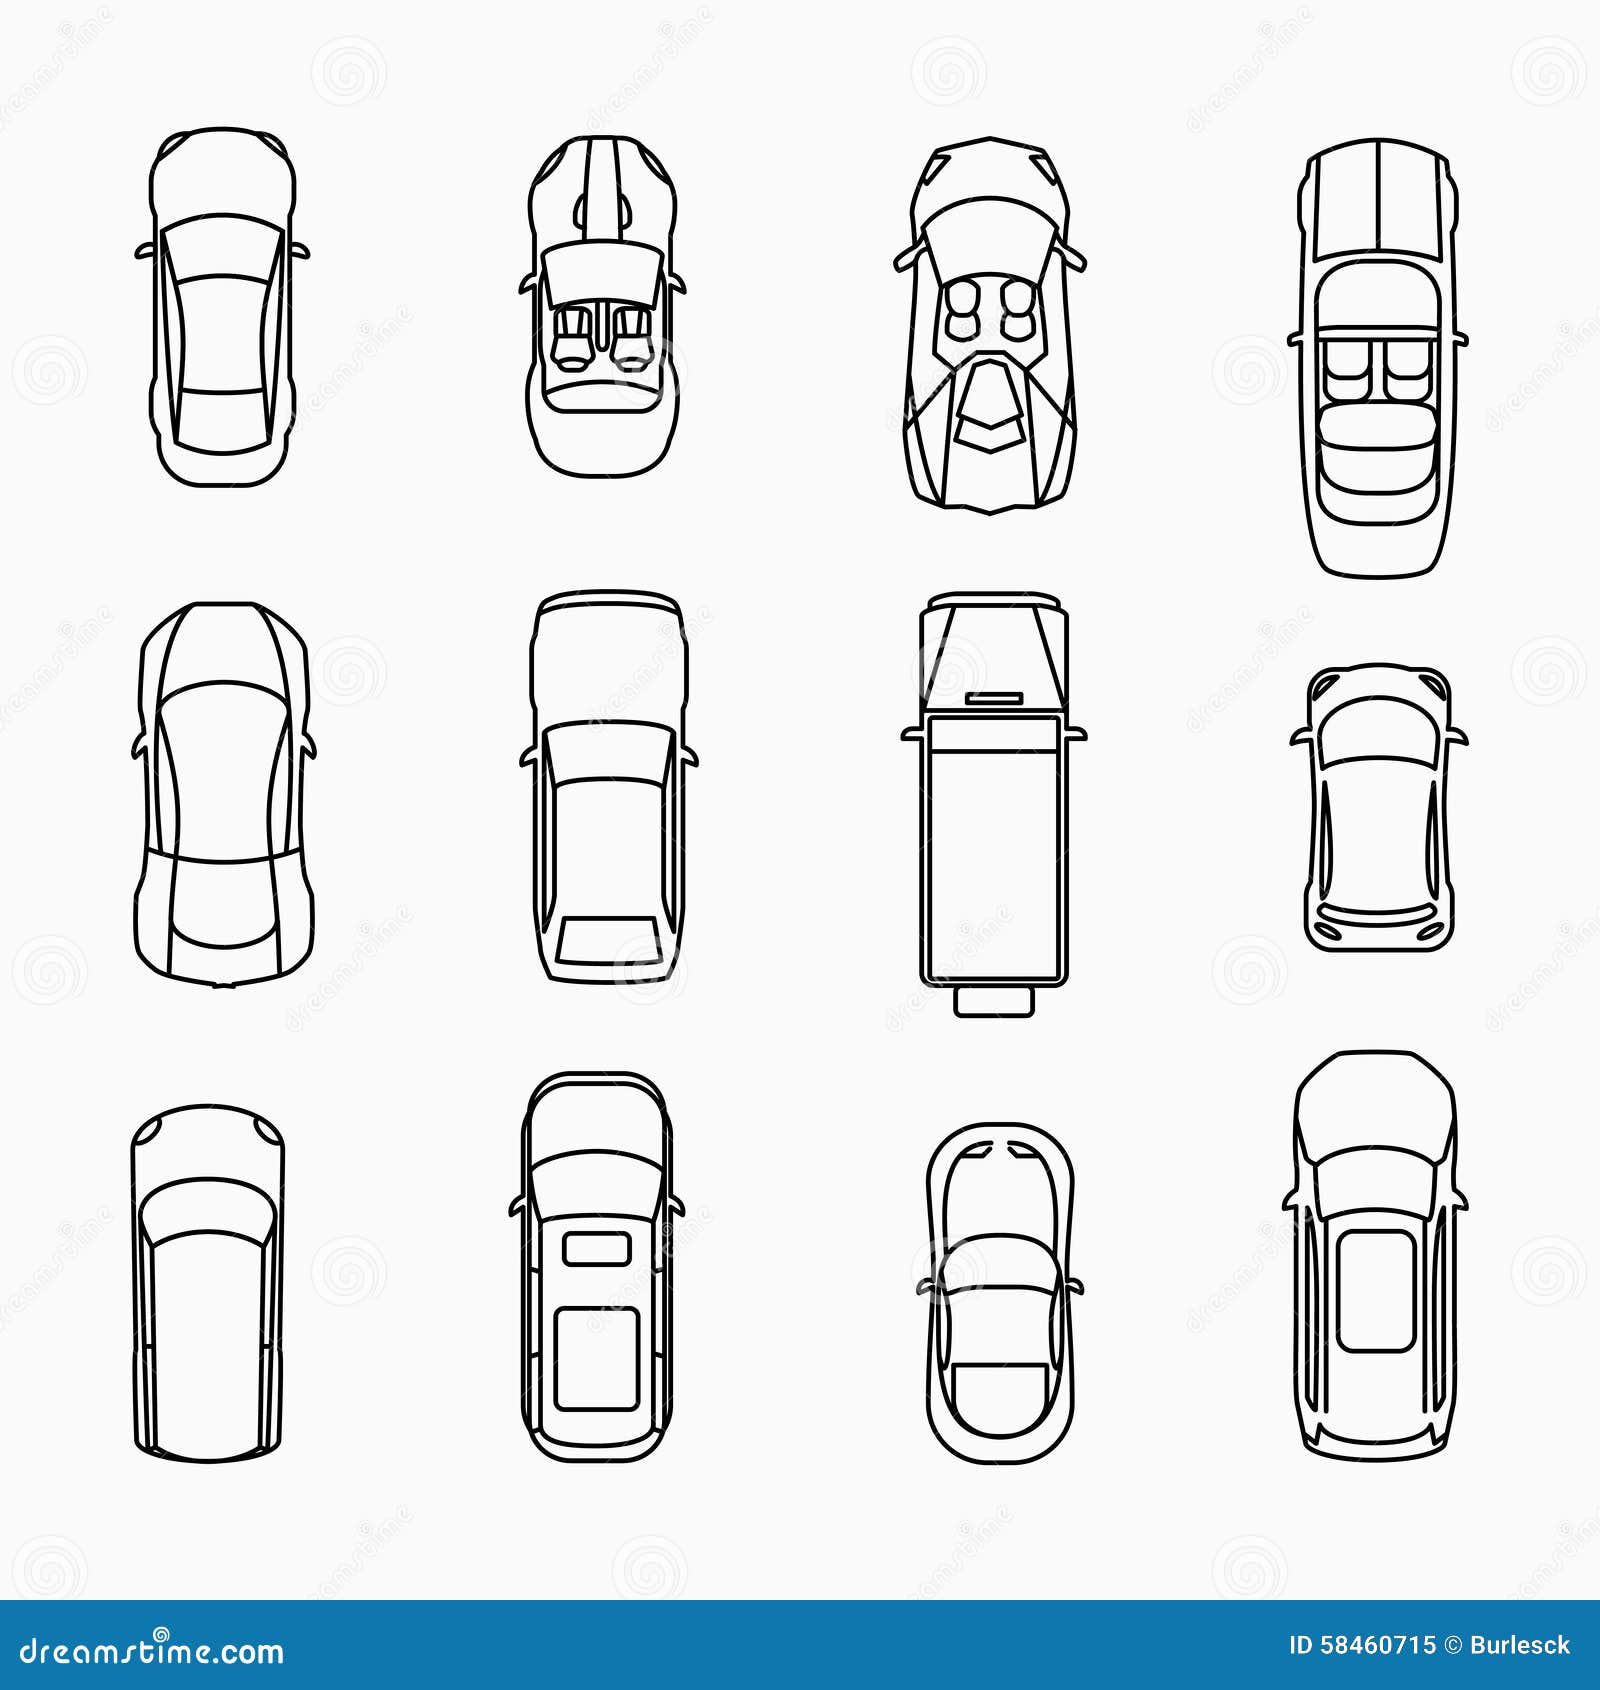 Forbrydelse Vejrtrækning formel Car icons top view stock vector. Illustration of automobile - 58460715